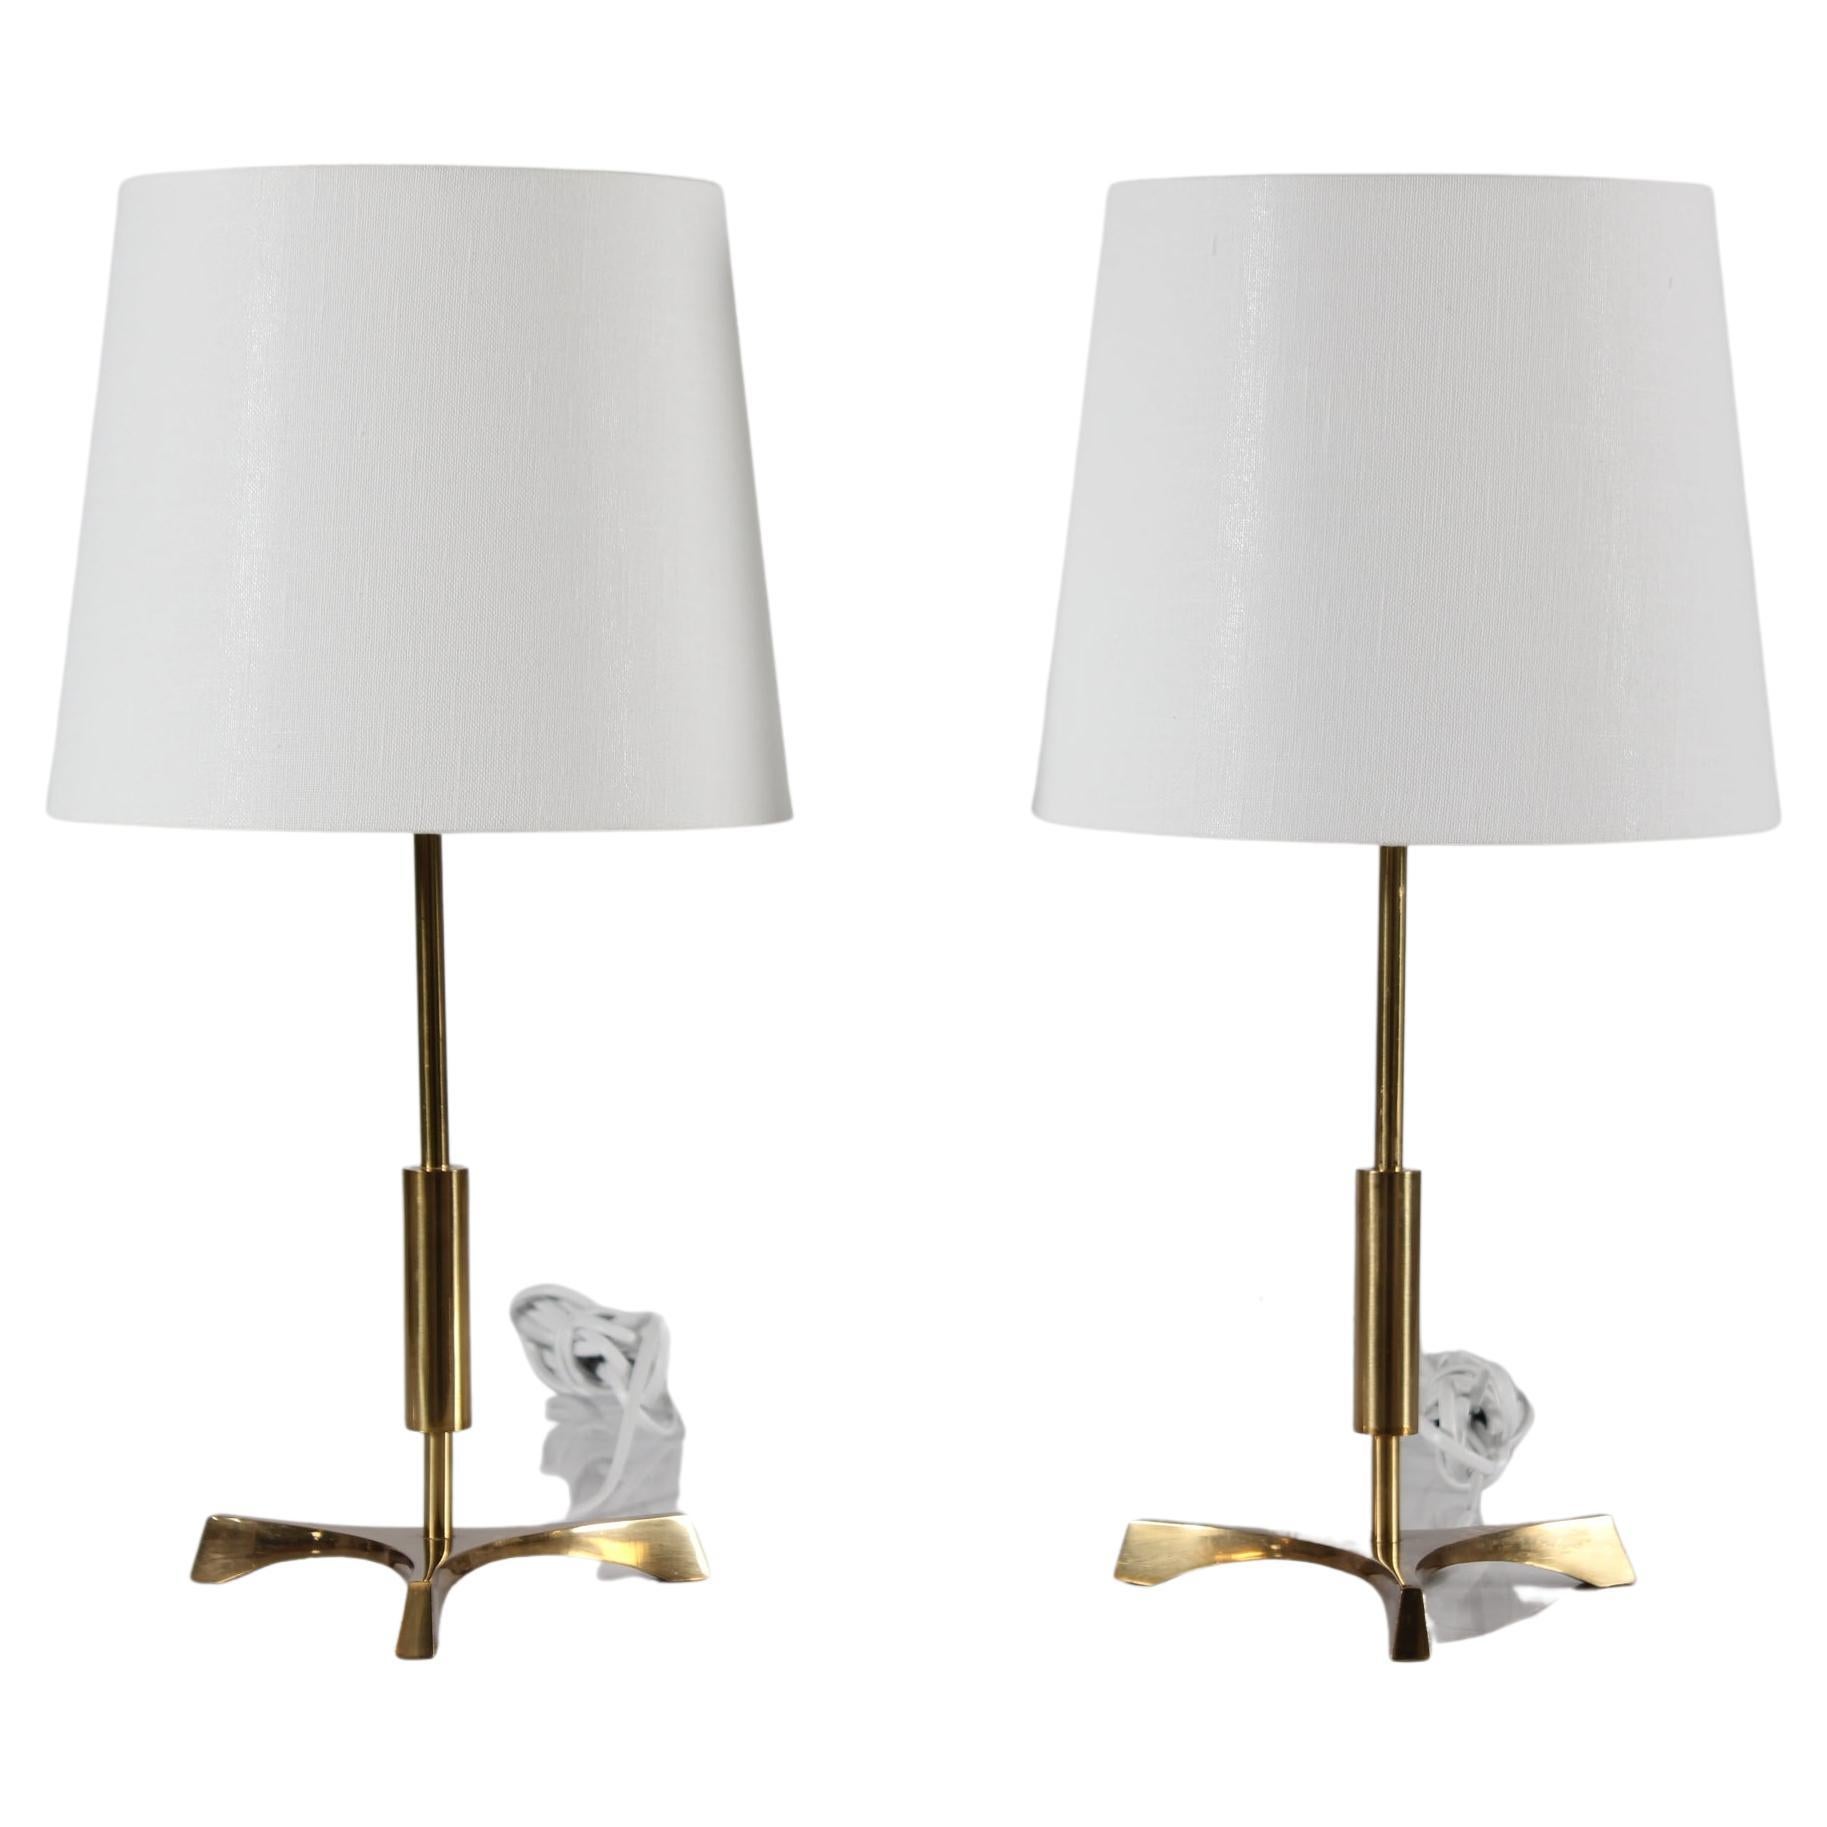 Paire de lampes de table tripodes danoises du milieu du siècle dernier, de style Jo Hammerborg.
Les lampes sont fabriquées en laiton dans les années 1960

Une paire de nouveaux abat-jour conçus au Danemark est incluse.
L'abat-jour est fait de